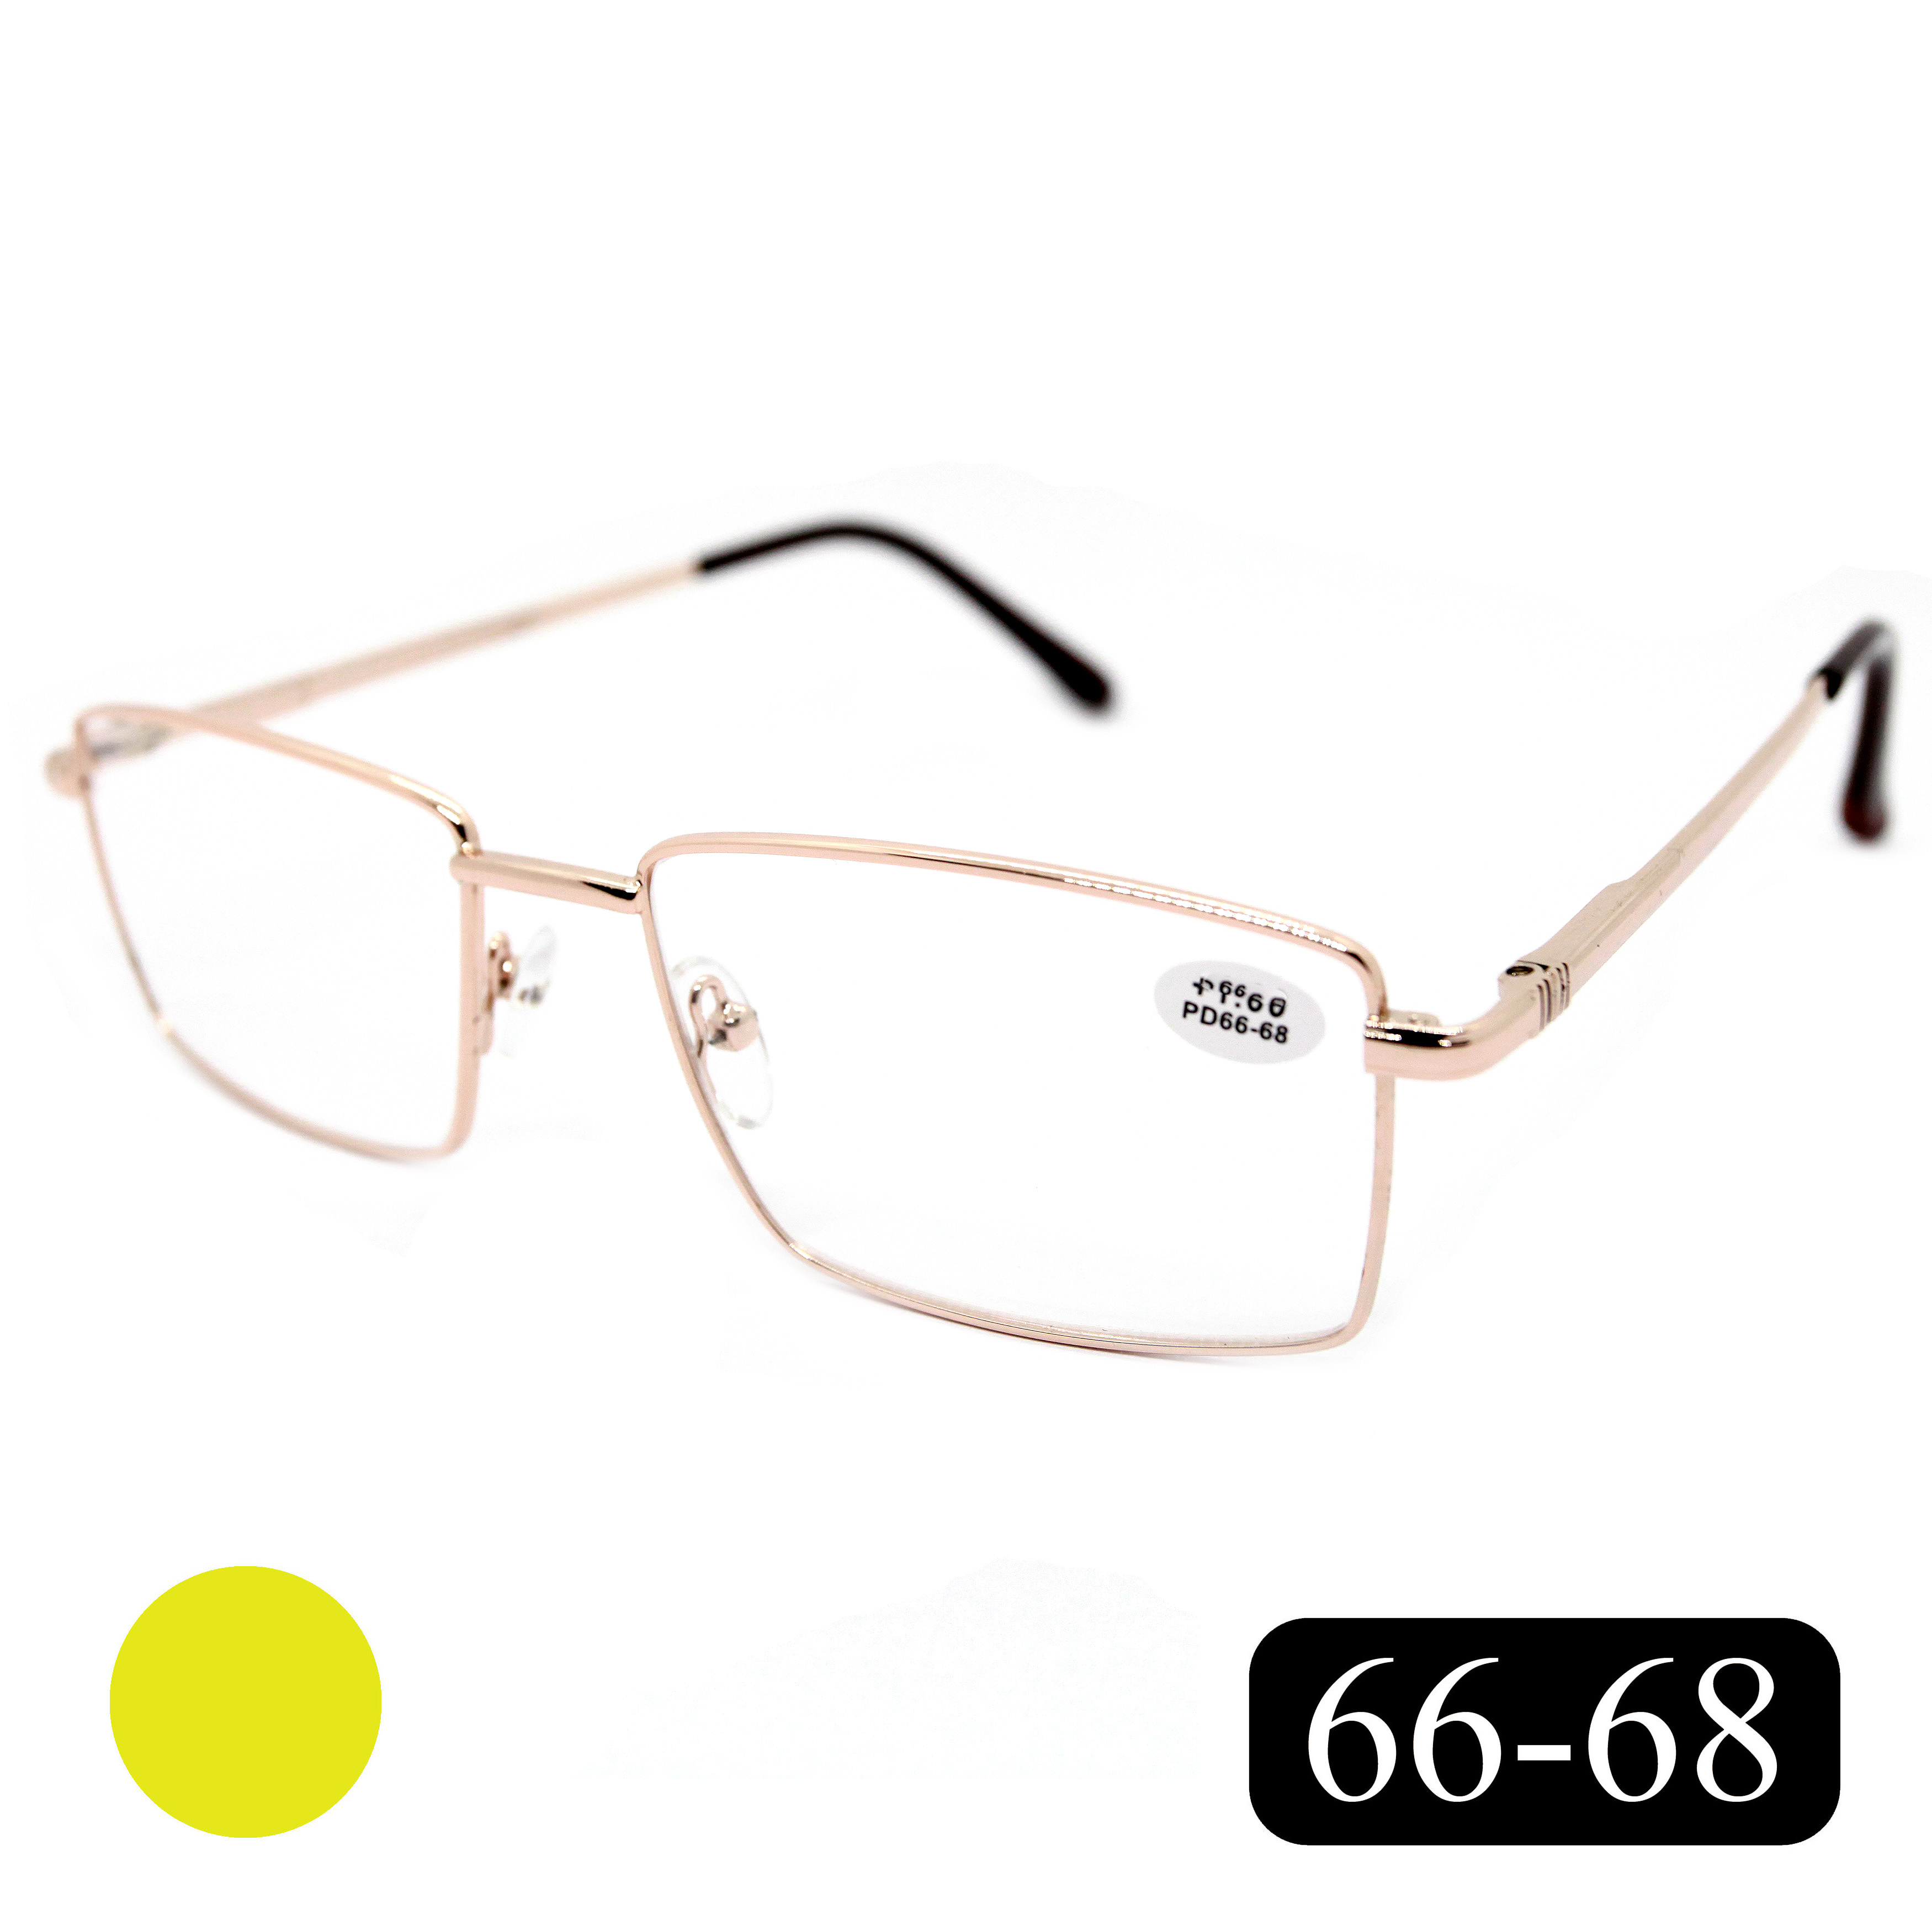 Готовые очки МОСТ 182 M1, для чтения, +0,75, без футляра, золотистые, РЦ 66-68